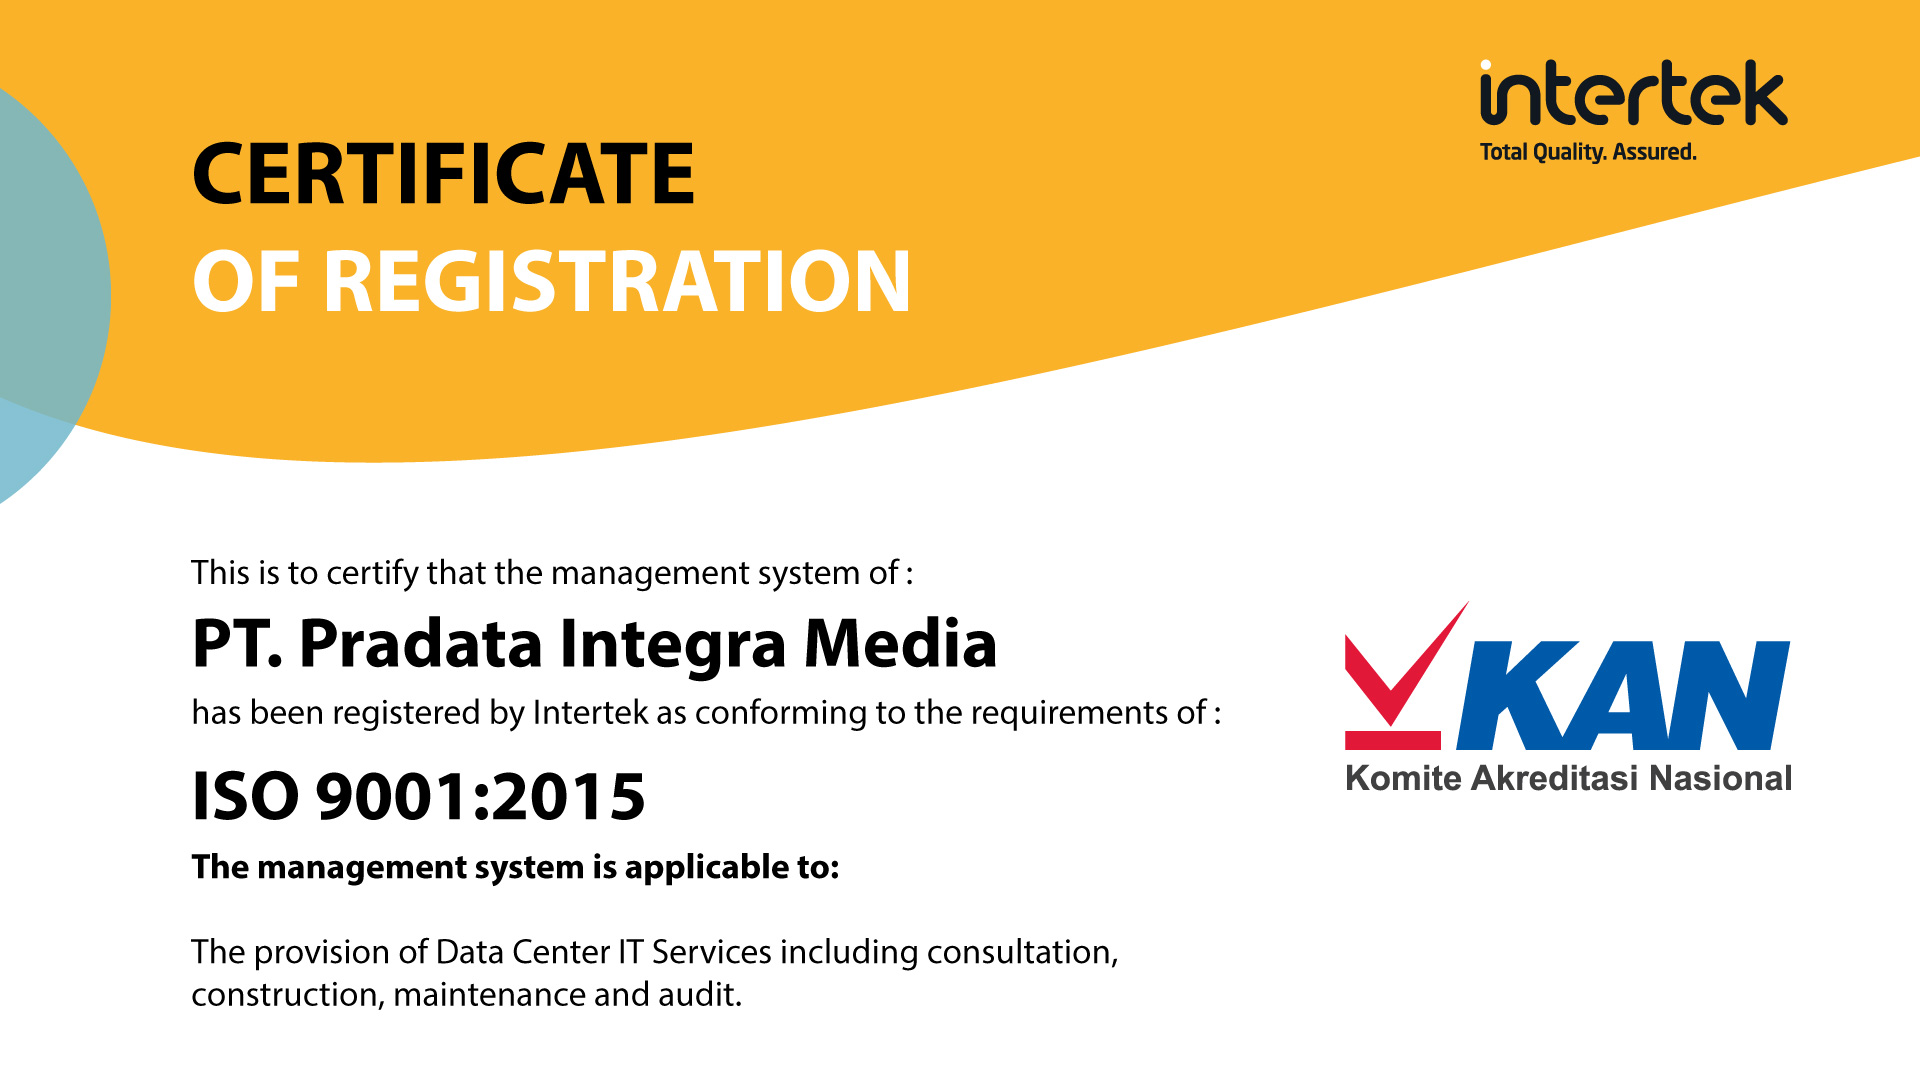 prime dcs sebagai penyedia data center solution mendapat sertifikasi ISO 9001:2015